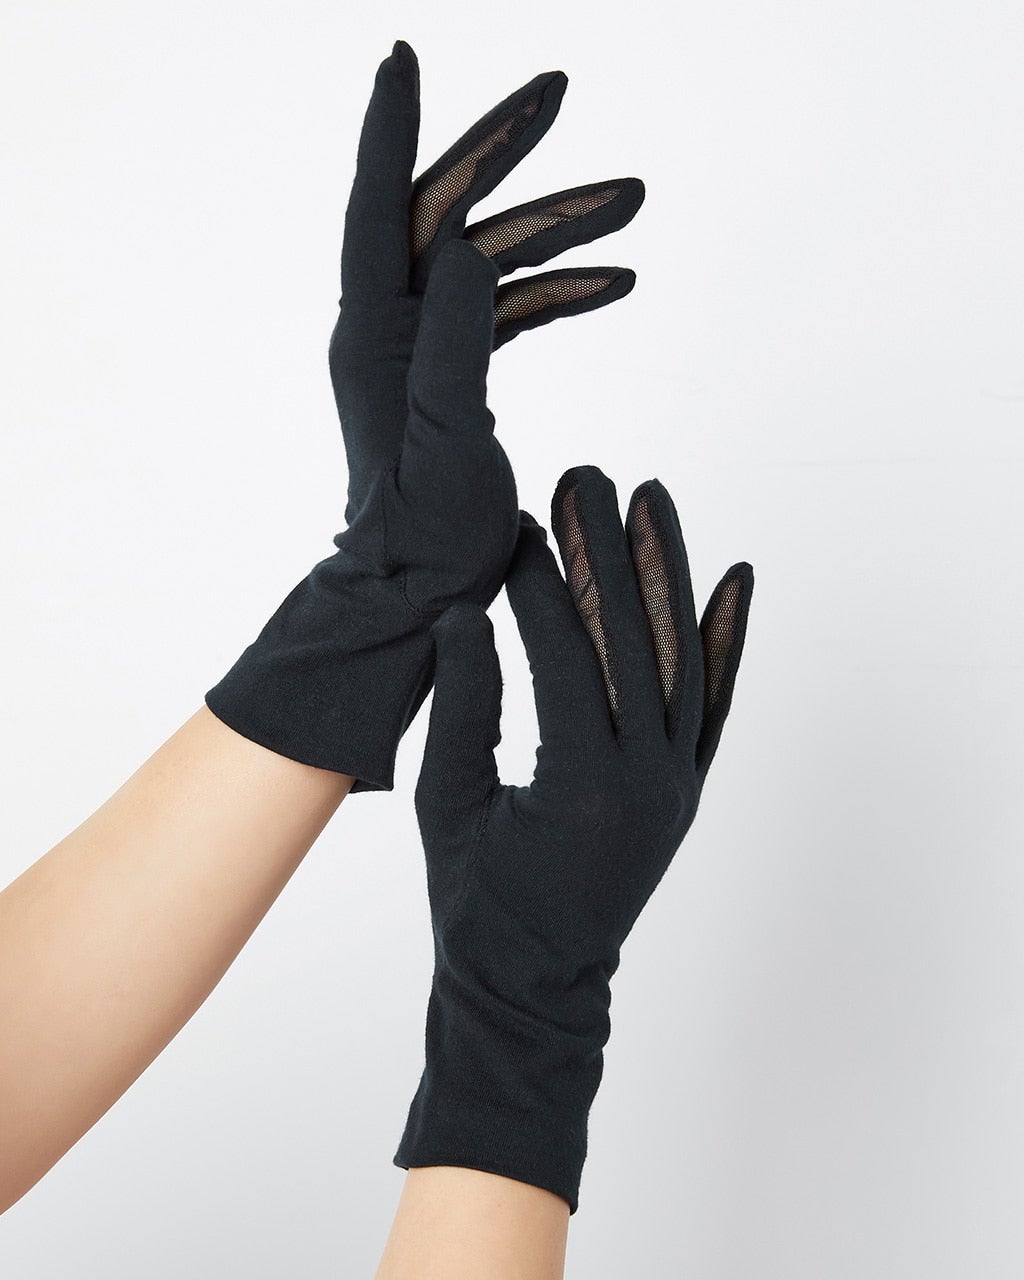 Doガード・抗ウイルスUV手袋/40代50代からのレディース・メンズ